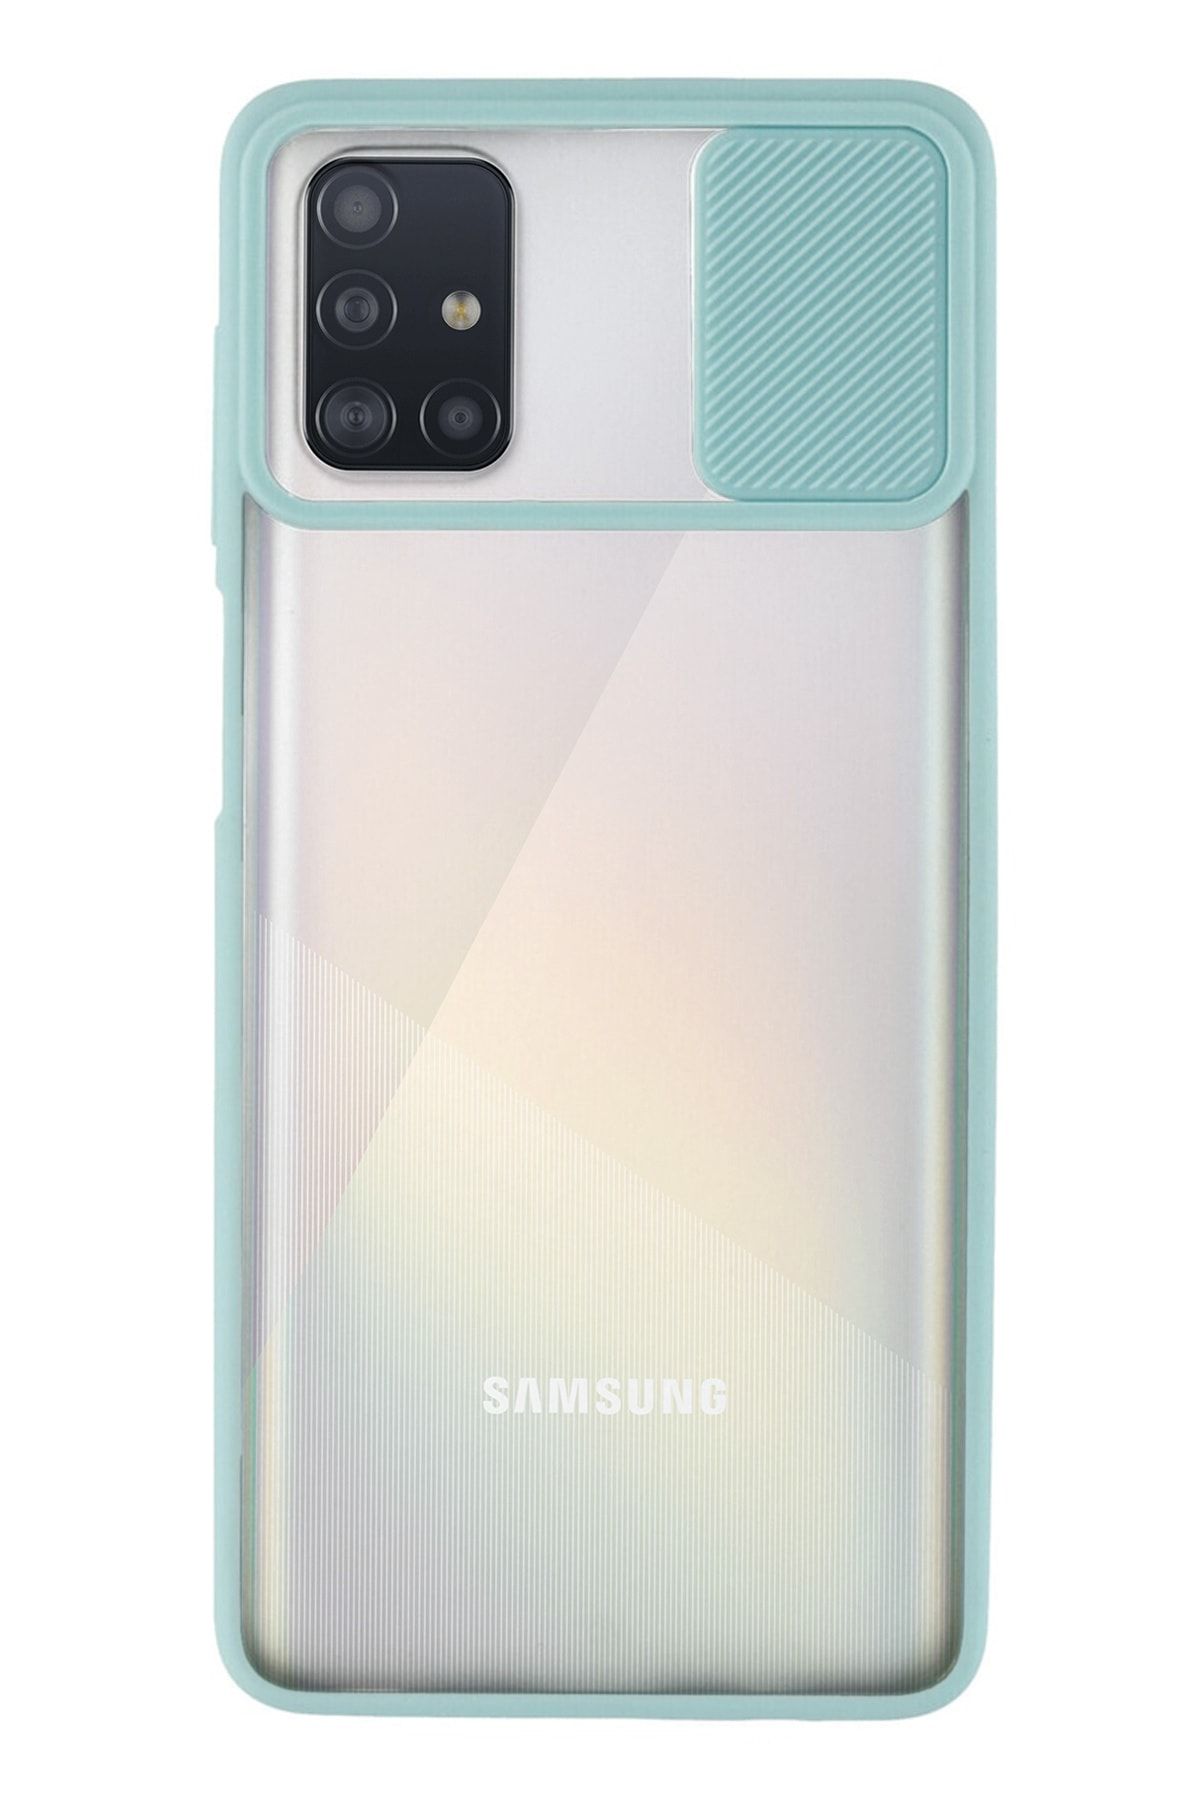 KZY İletişim Samsung Galaxy A71 Uyumlu Lensi Açılır Kapanır Kamera Korumalı Silikon Kılıf